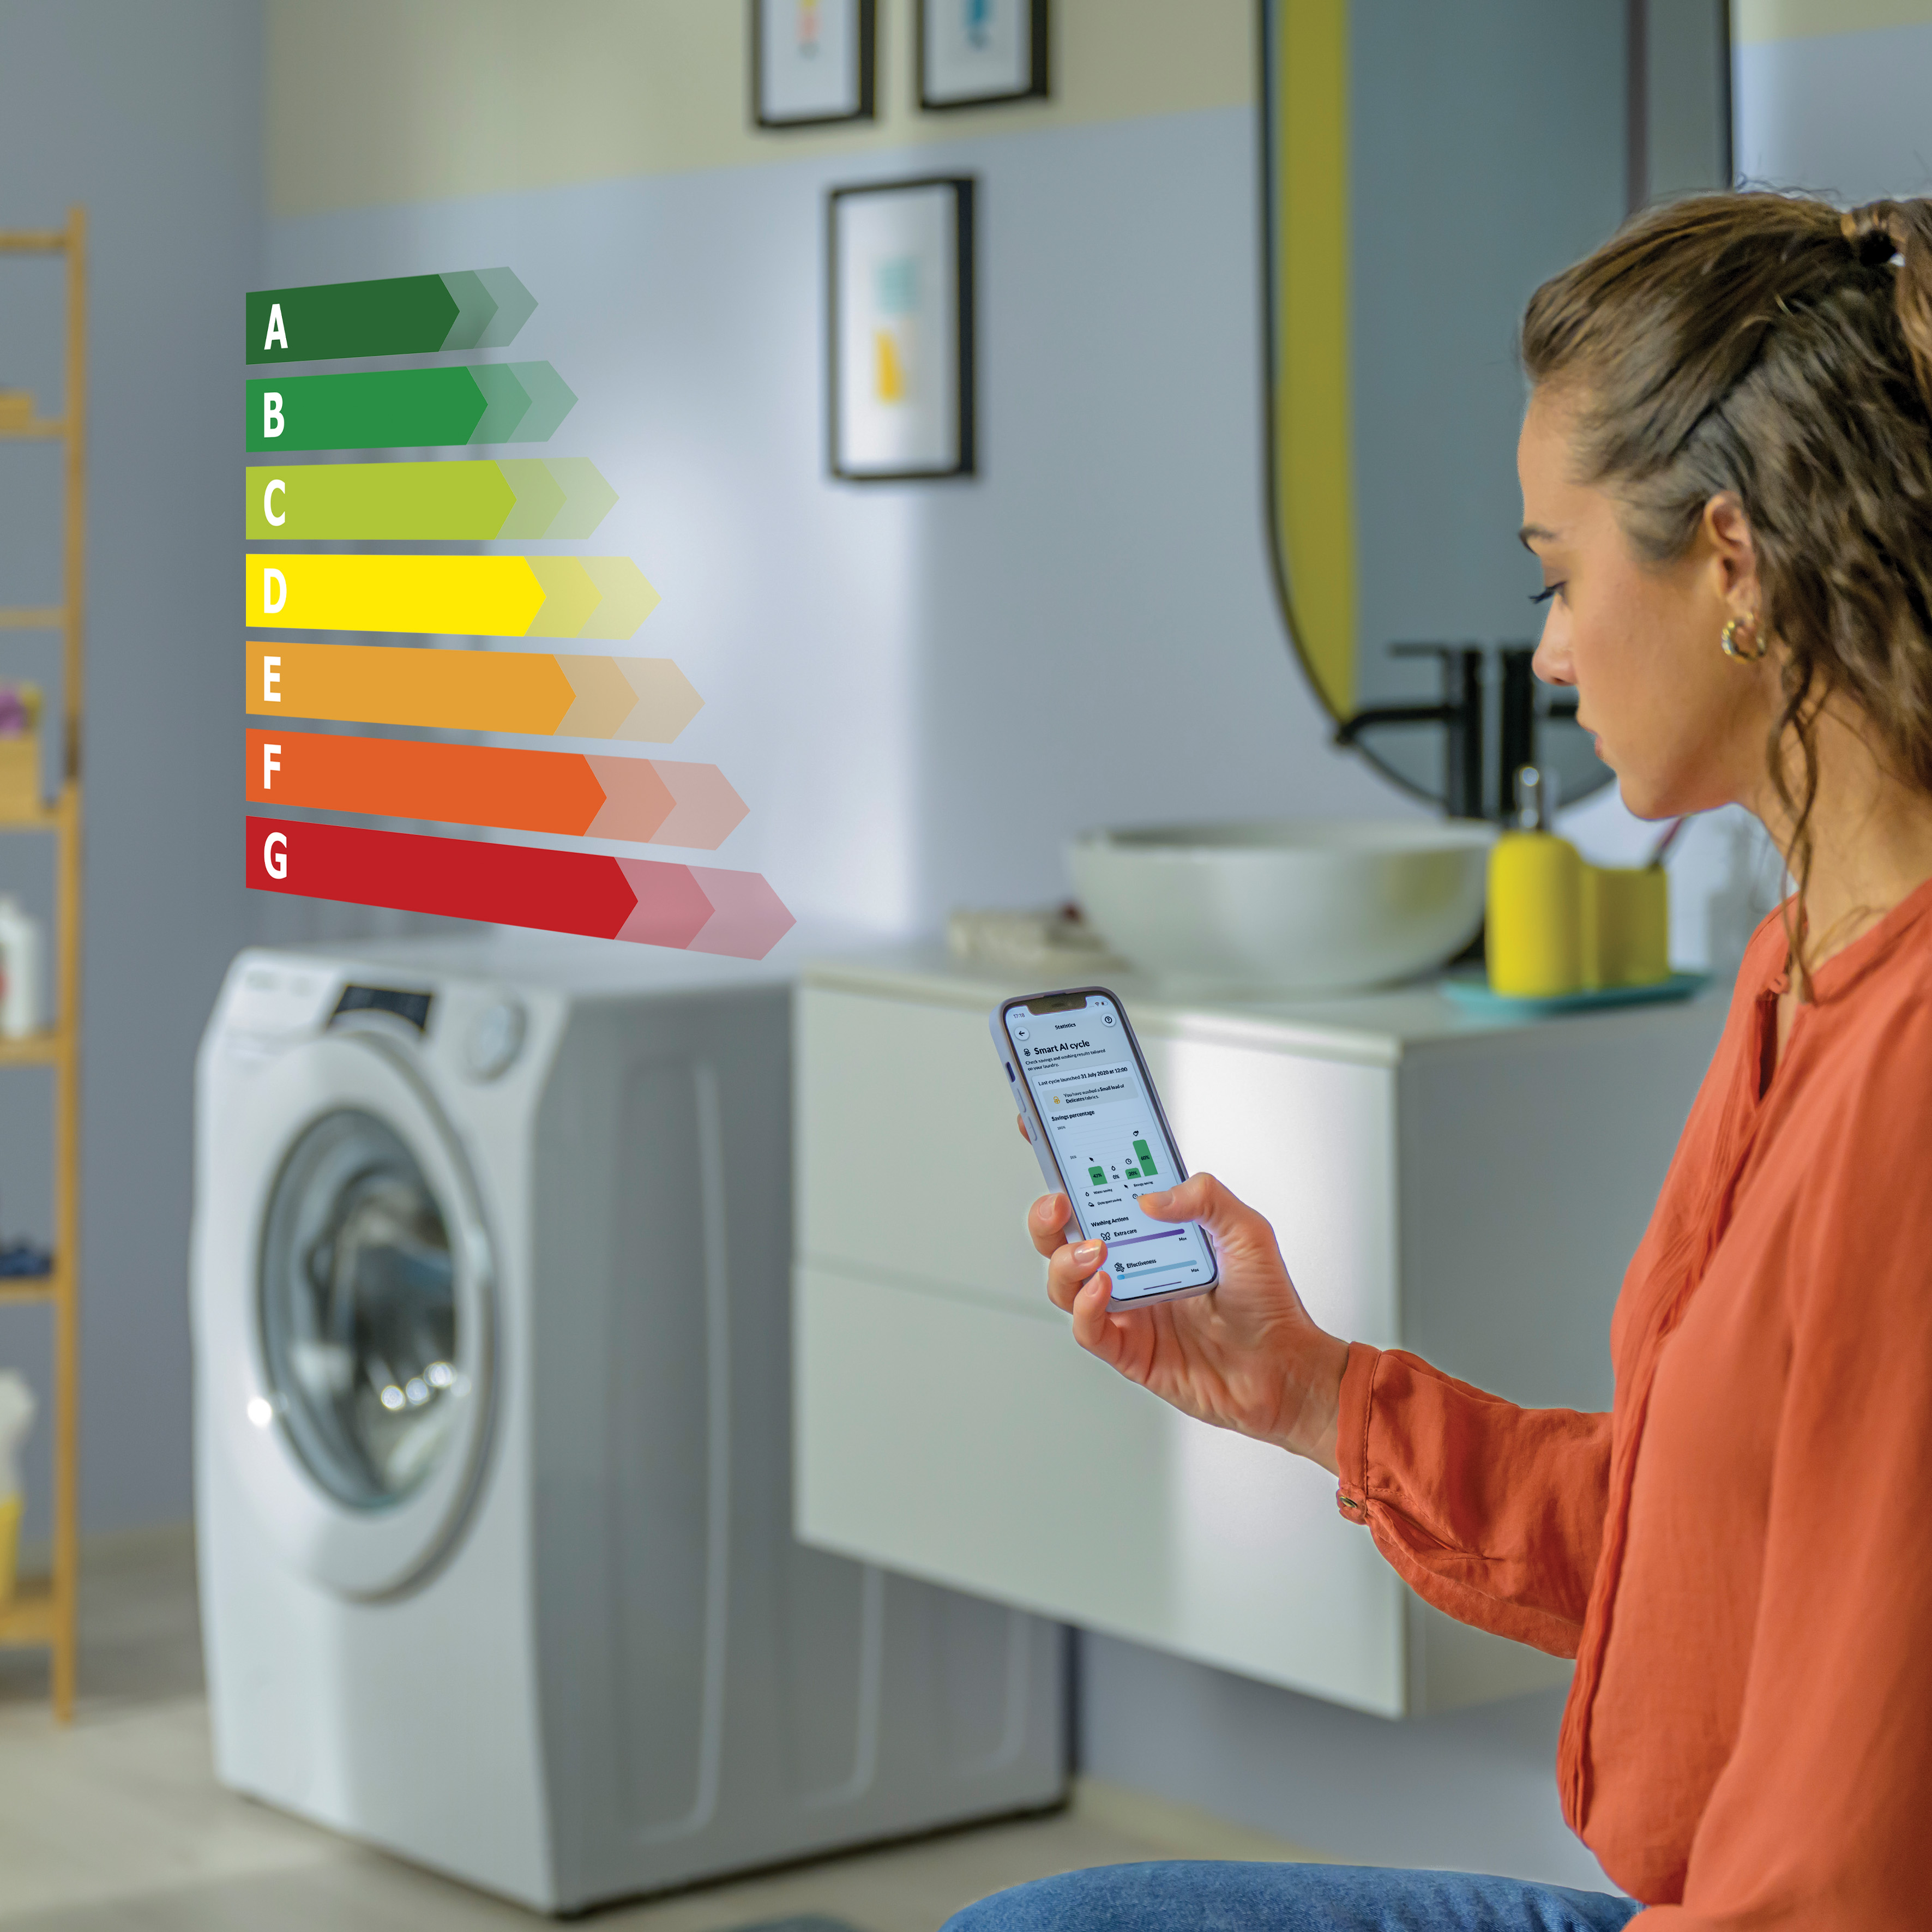 Πώς να έχετε τη μέγιστη ενεργειακή απόδοση από τις οικιακές συσκευές σας; Αξιοποιήστε τις έξυπνες λειτουργίες και τις σωστές χρονικές περιόδους χρήσης